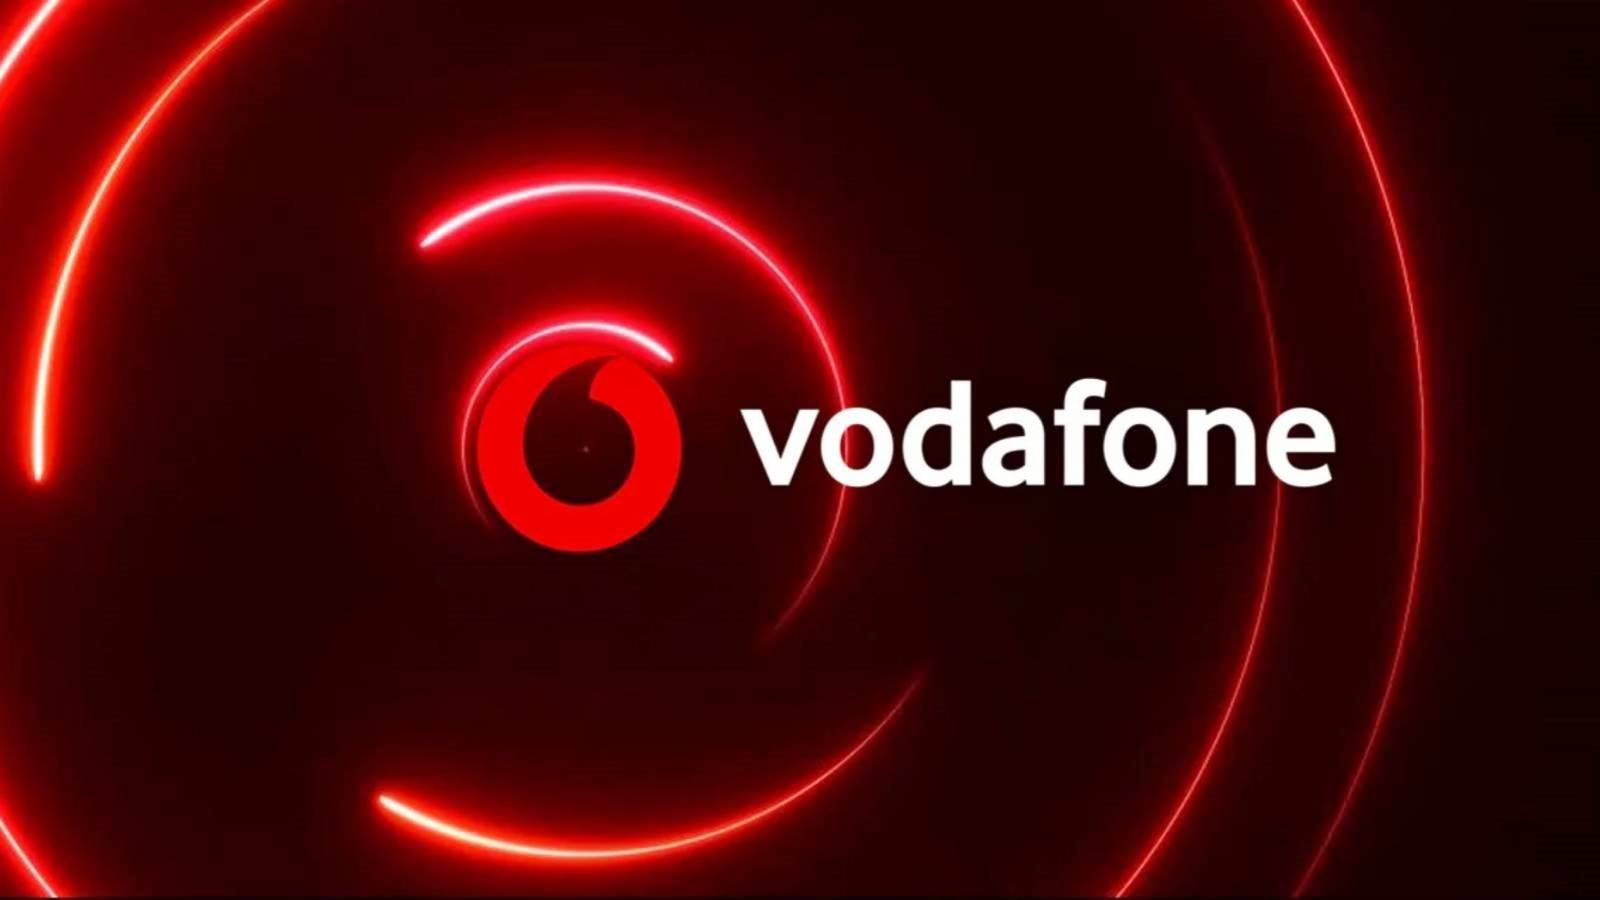 Vodafone-Ankündigung WICHTIGE Änderung für rumänische Kunden